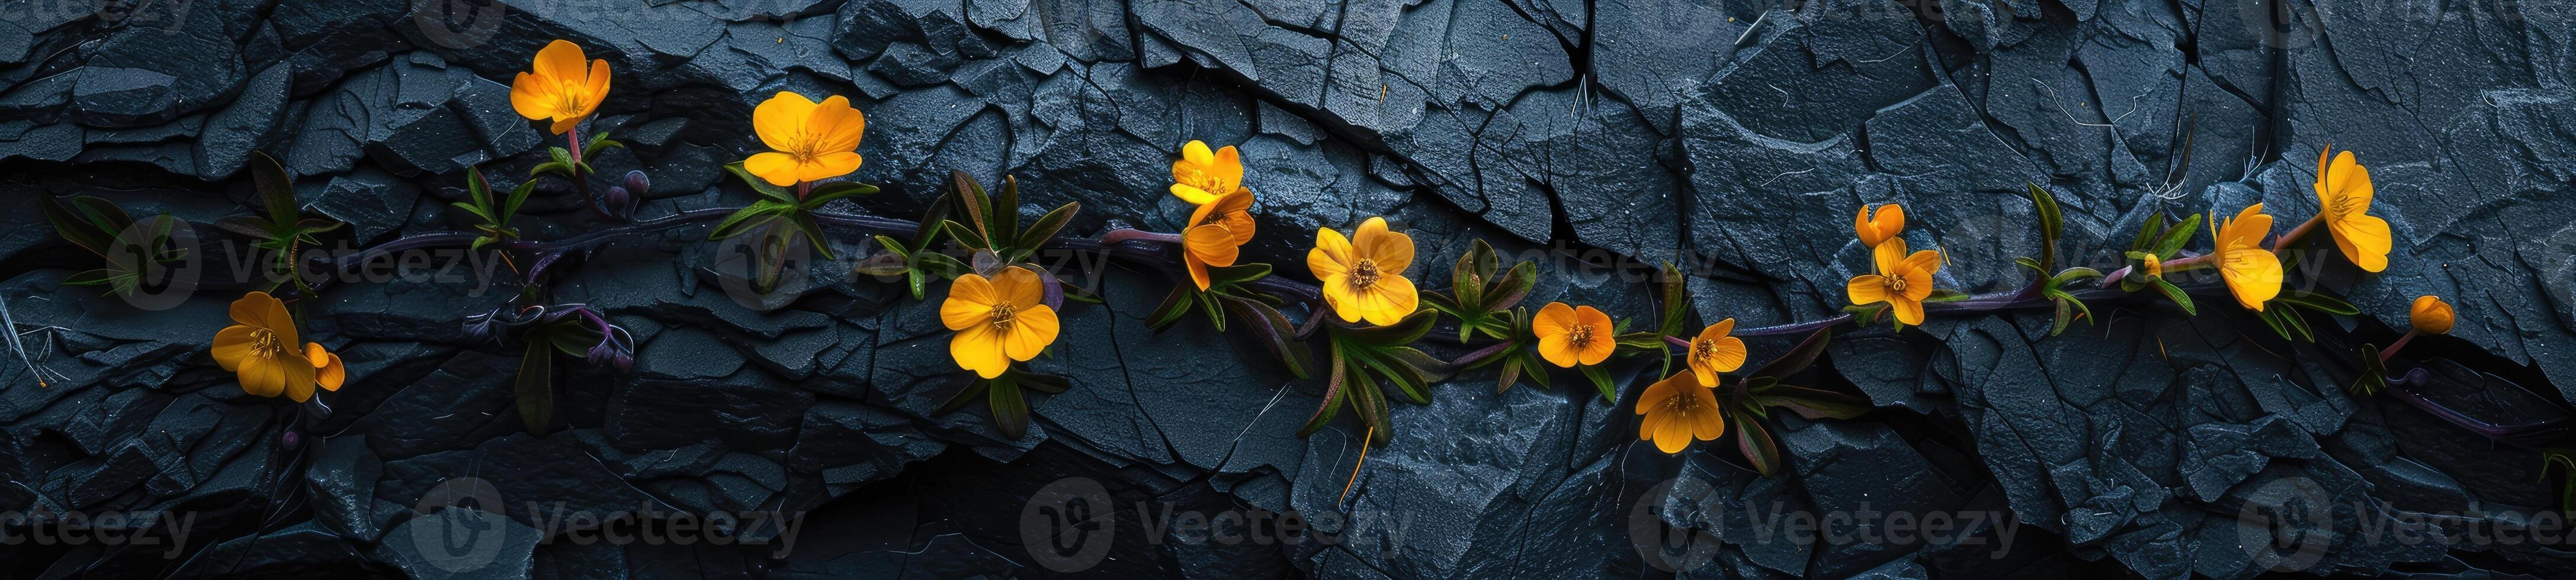 abundancia de pequeño amarillo flores en oscuro Roca antecedentes foto